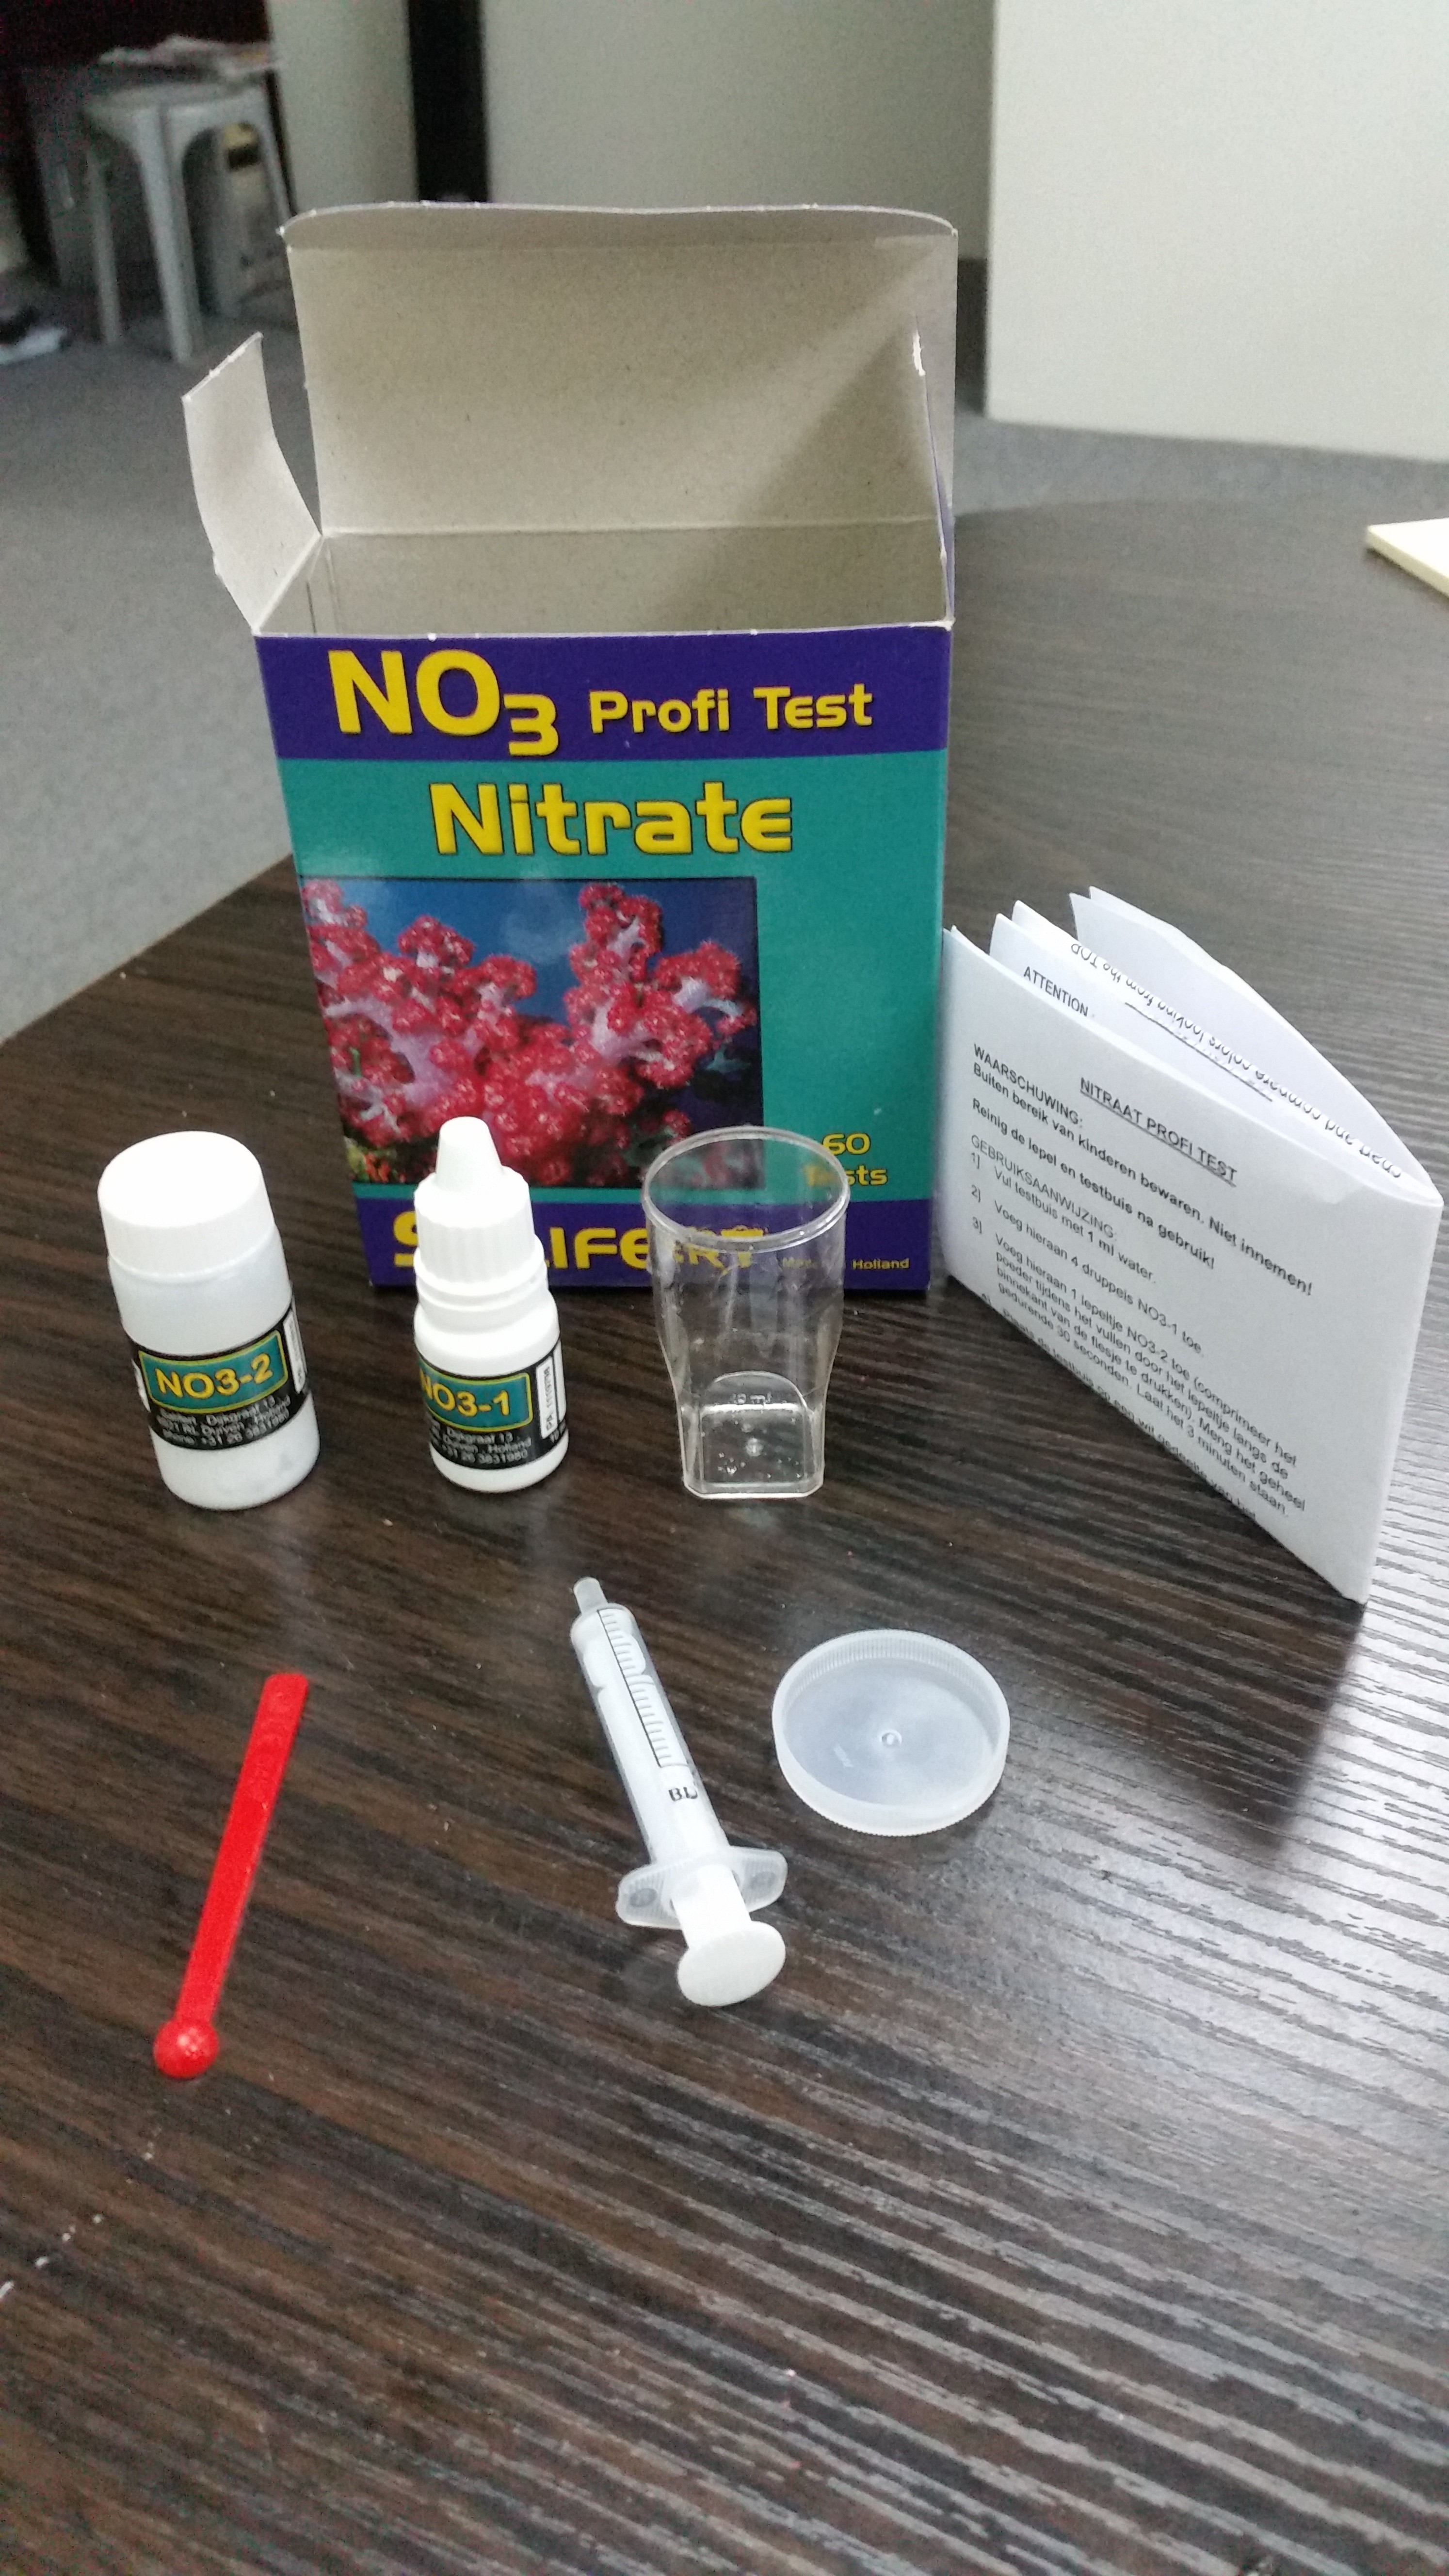 Salifert Nitrate Test Kit